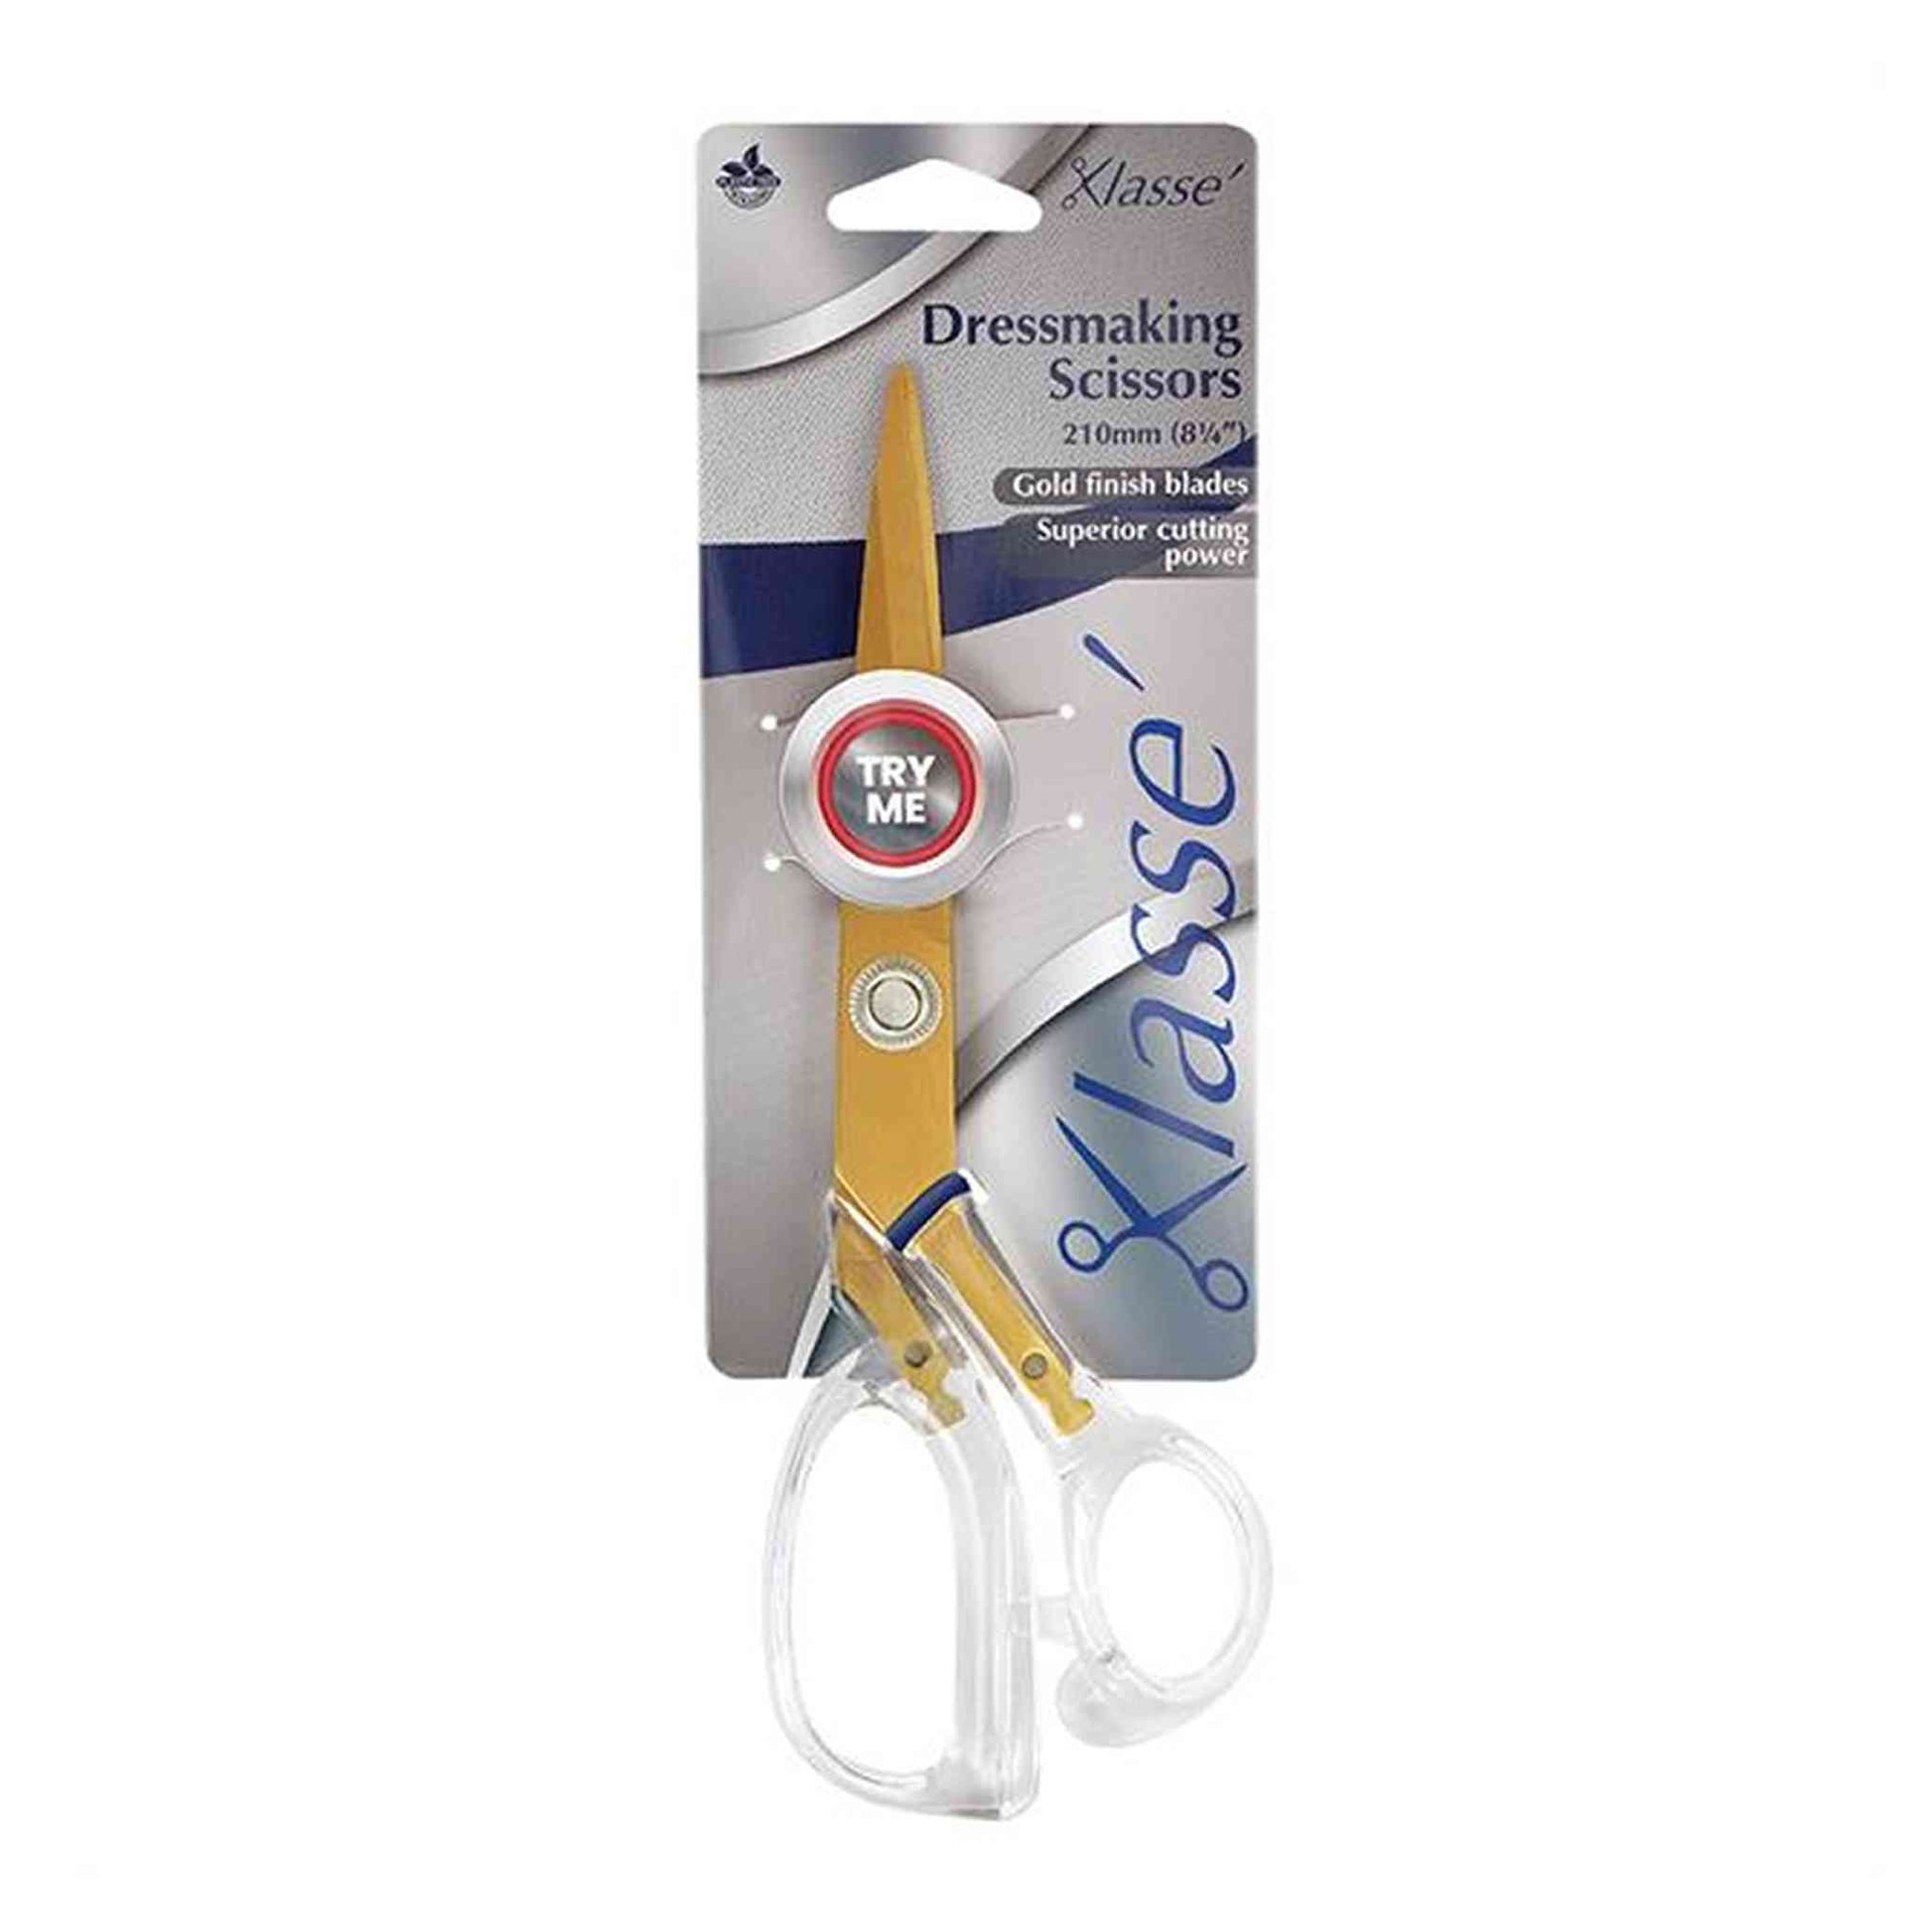 Klasse branded dressmaking scissors with 210mm / 8.25 Inch length. Transparent plastic handle, gold finish metal blades.